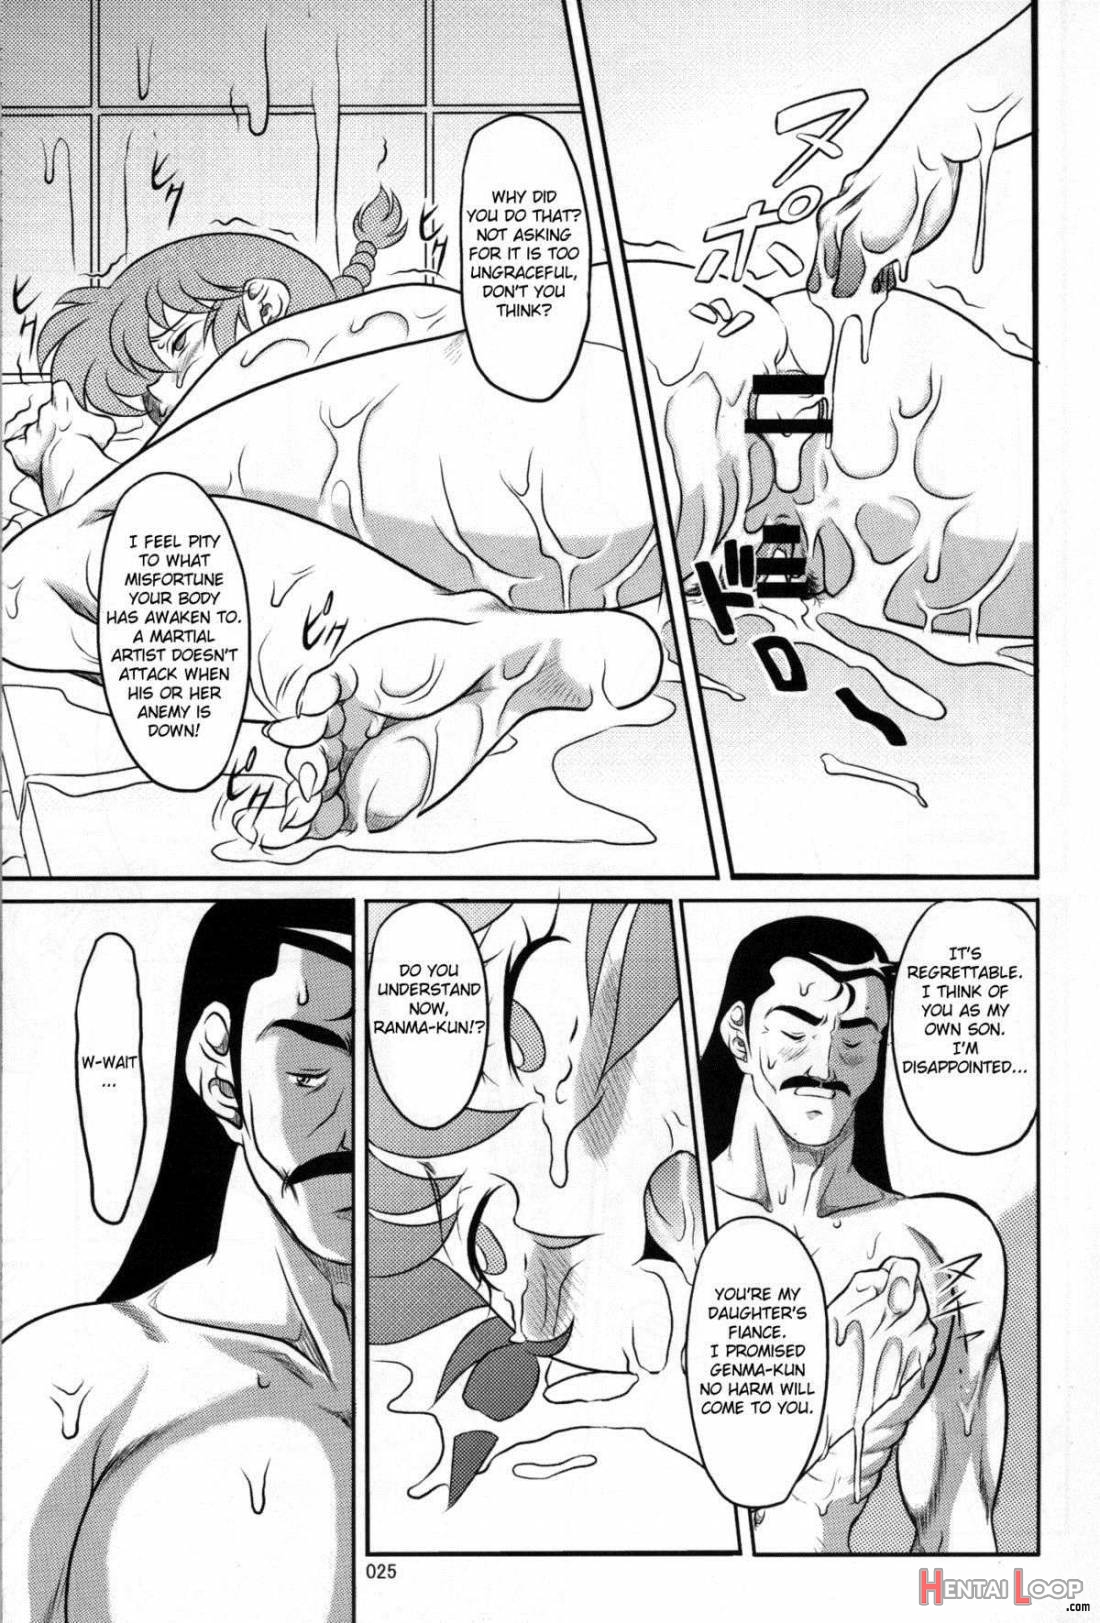 Ranma ♂♀ page 13